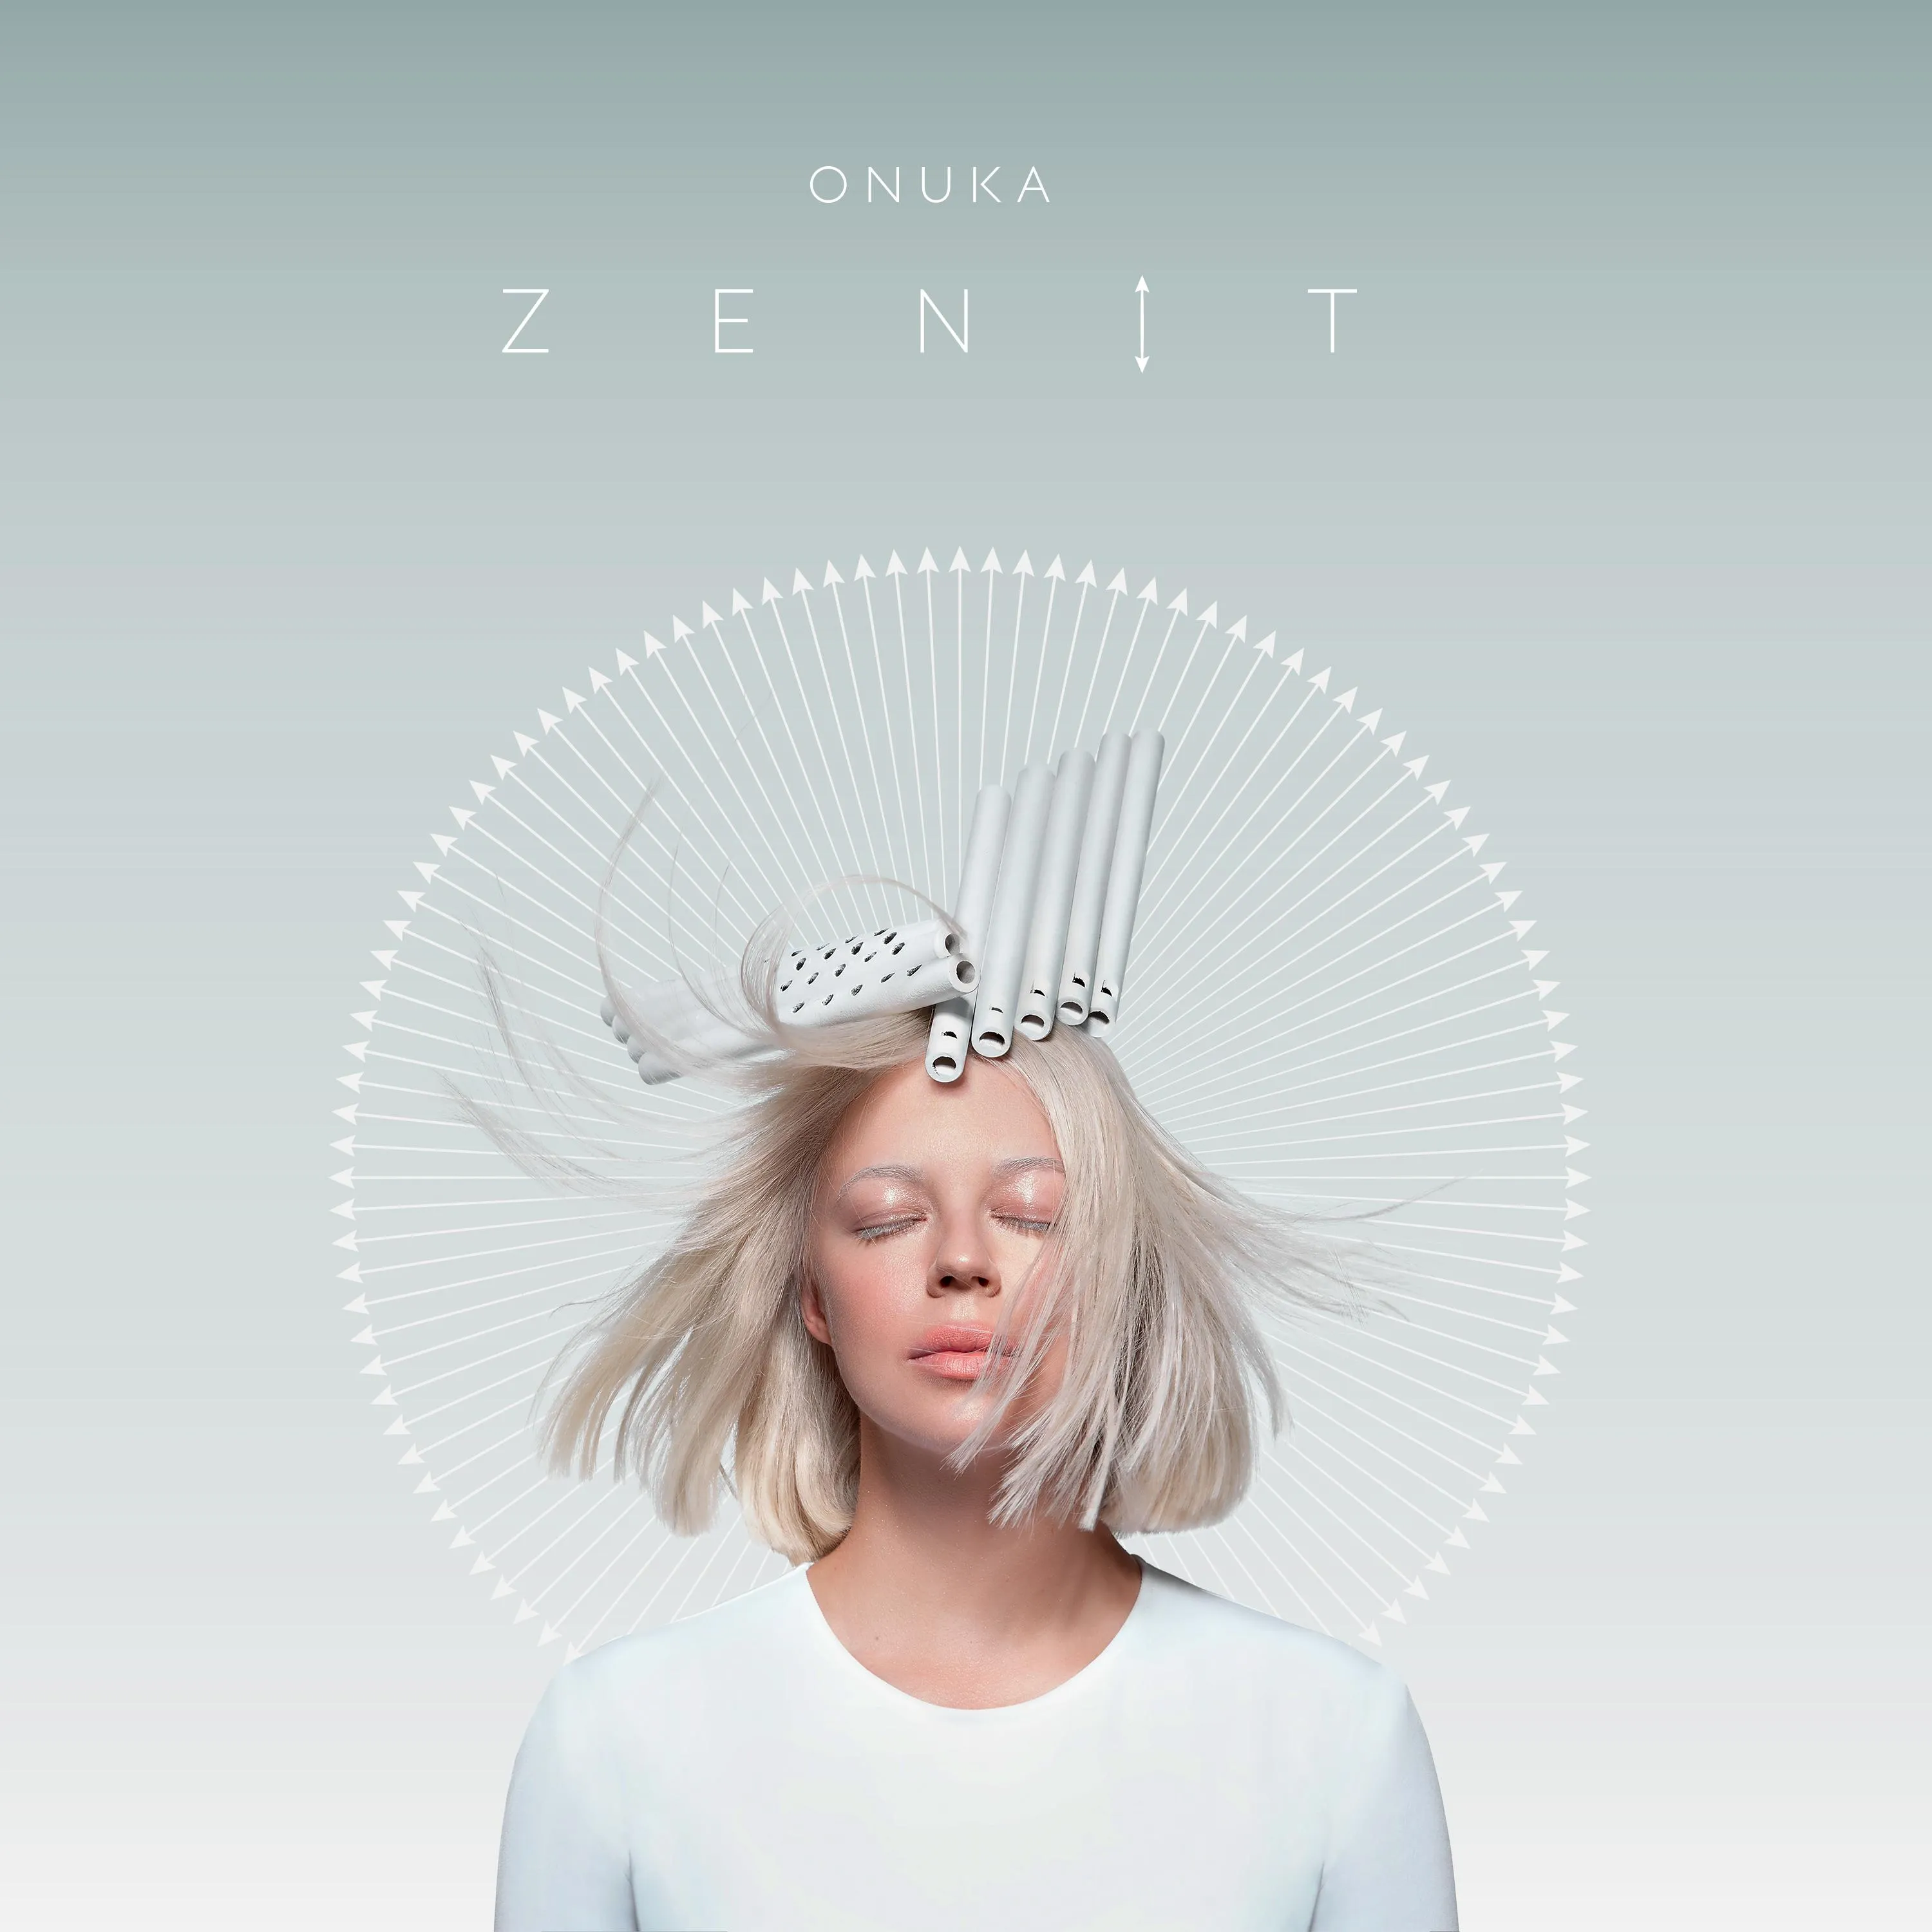 ONUKA випустила пісню ZENIT